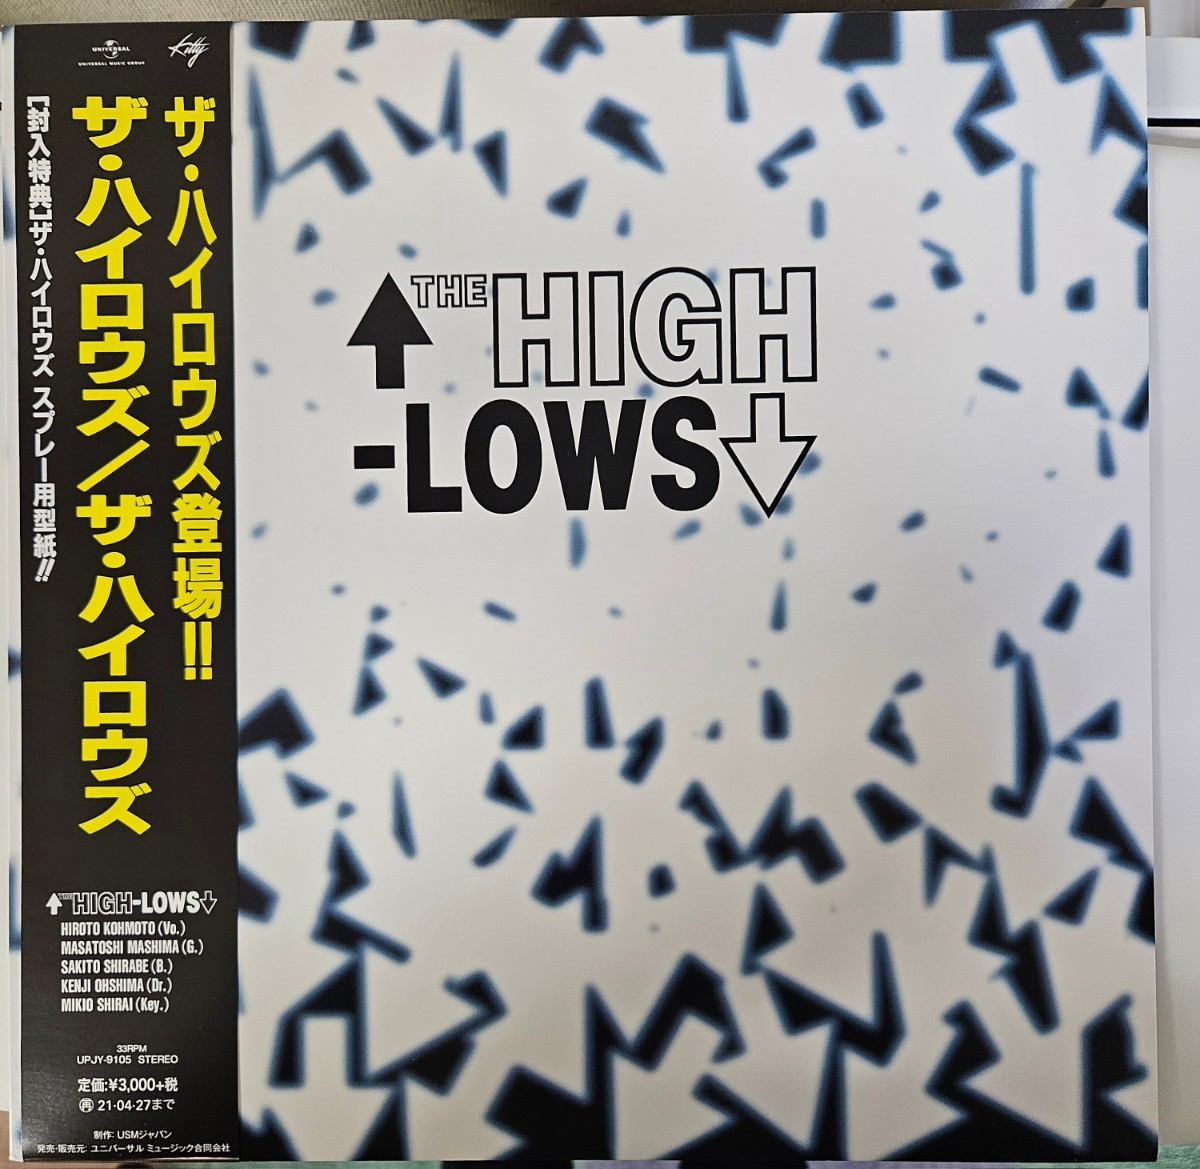 HIGH-LOWS LP レコード ハイロウズ blue hearts ブルーハーツ クロマニヨンズ punk rock sex pistols ramones swankys laughin nose clash_画像1